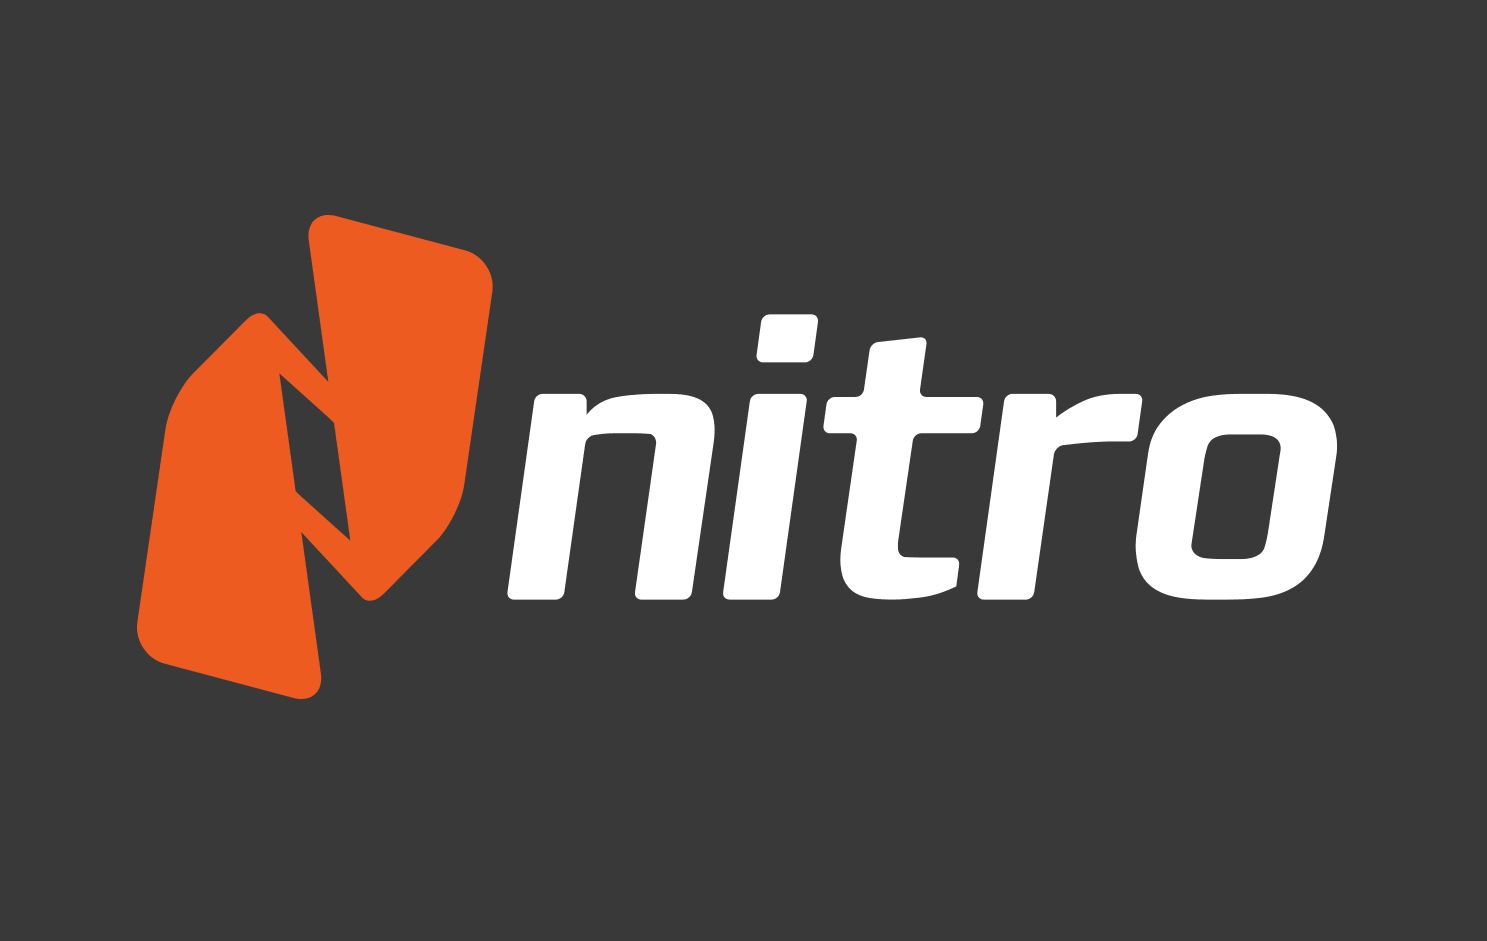 Nitro PDF Pro - Best overall runner-up